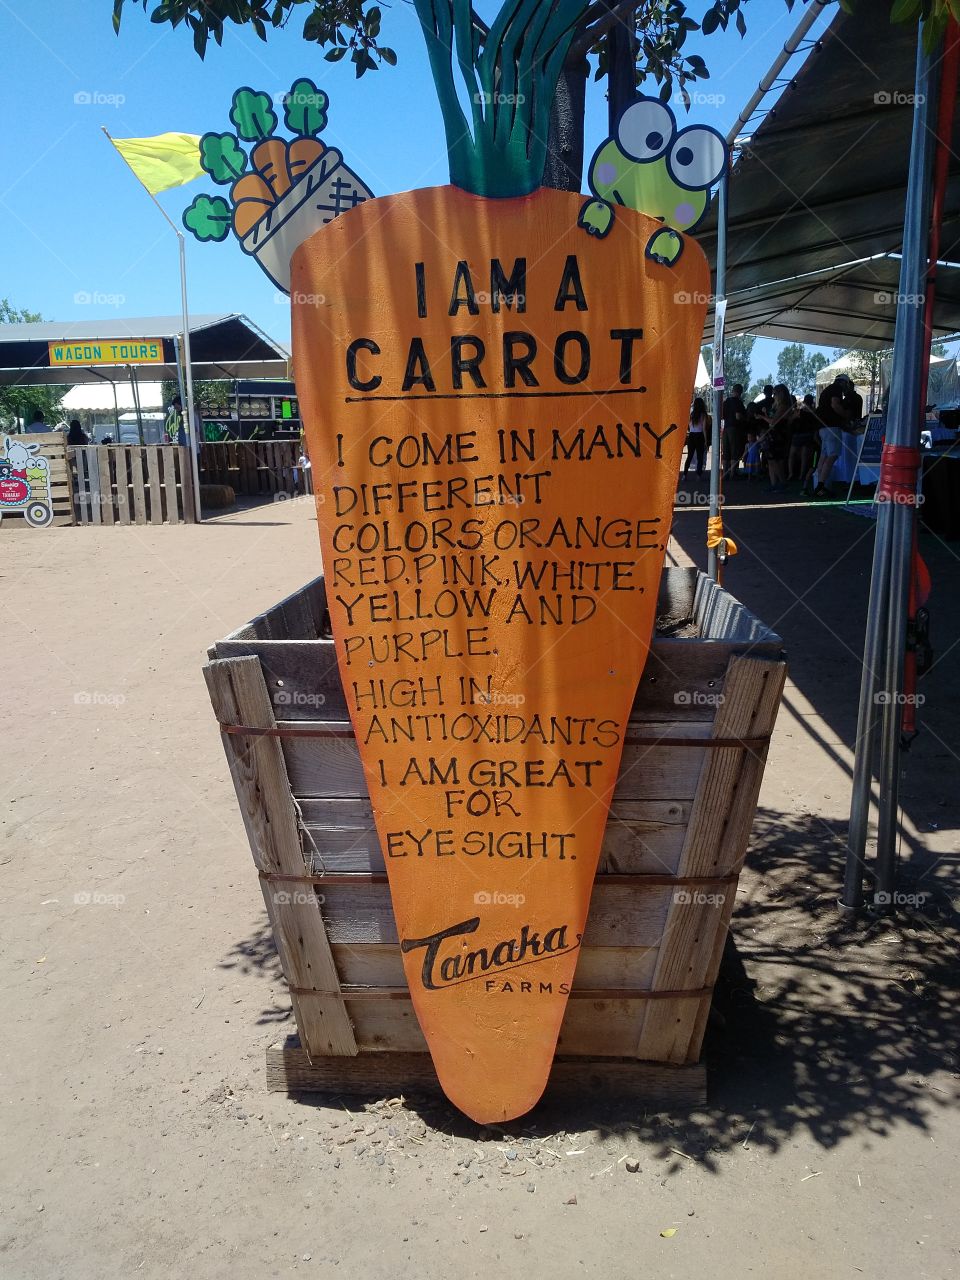 I am a Carrot